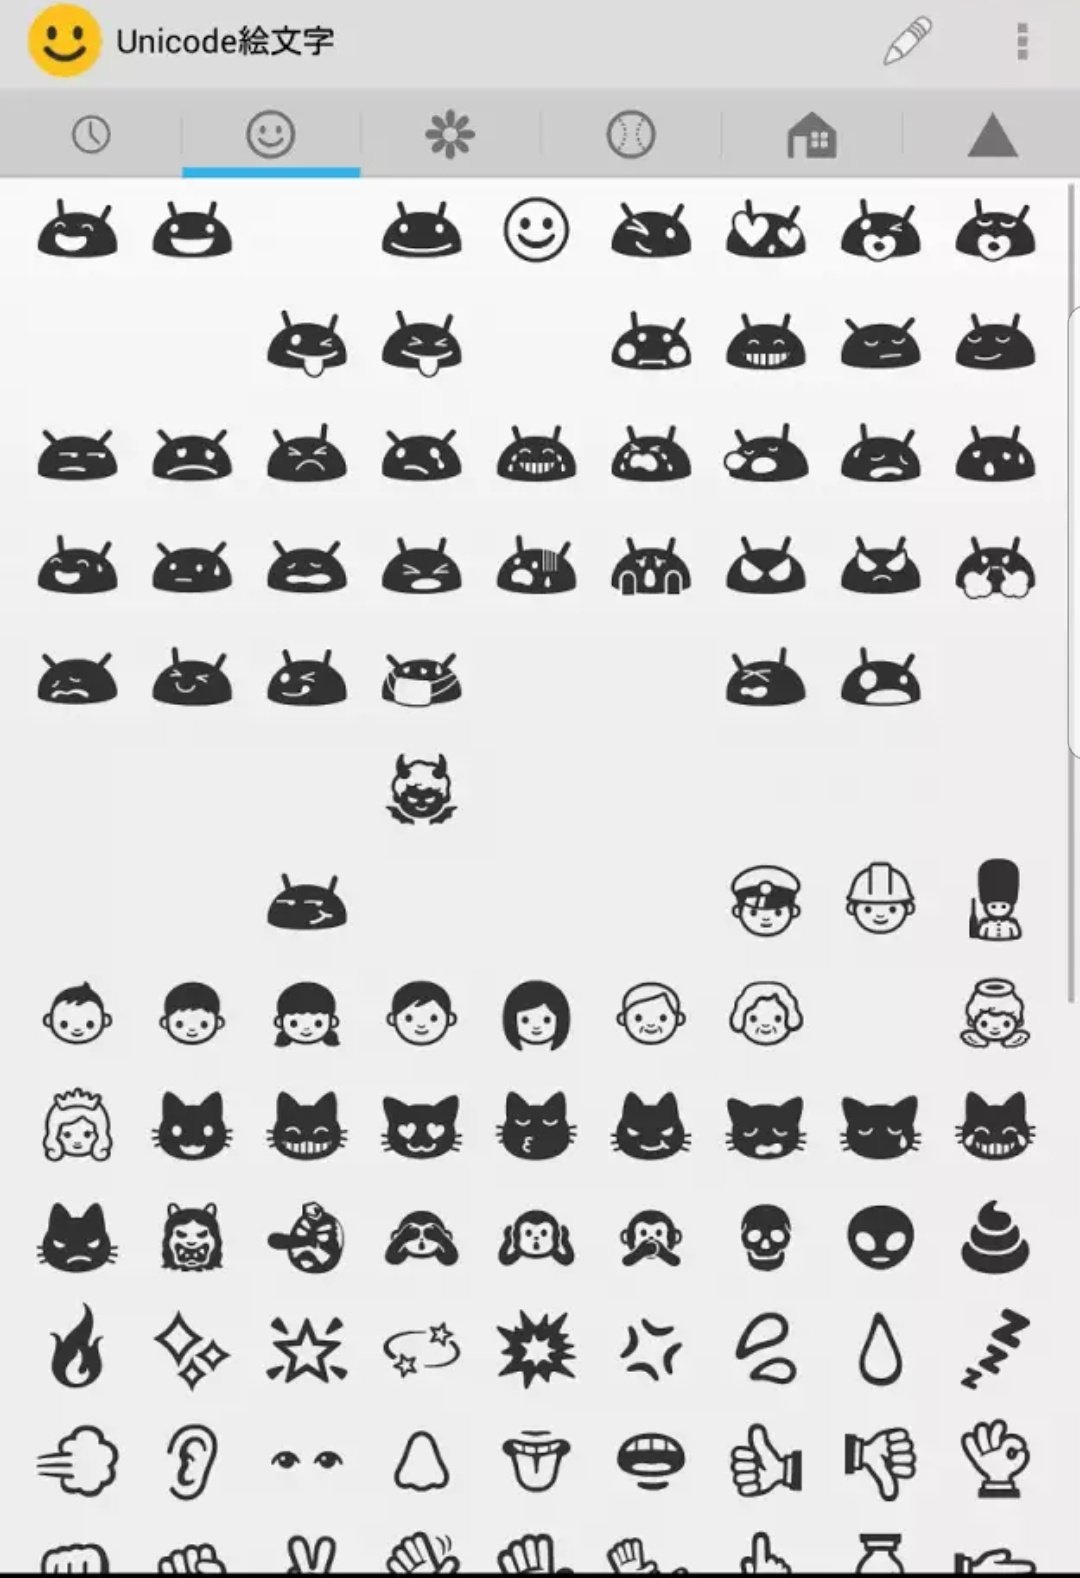 Mozzie あくび顔 カワウソ 盲導犬など59種類 230パターンの新絵文字が Unicode 12 0 で追加される 羨ましい Android端末の絵文字なんか全然話しにならない Iphoneの人の書込からコピペして使ってる始末 昔のモノクロの絵文字が好き